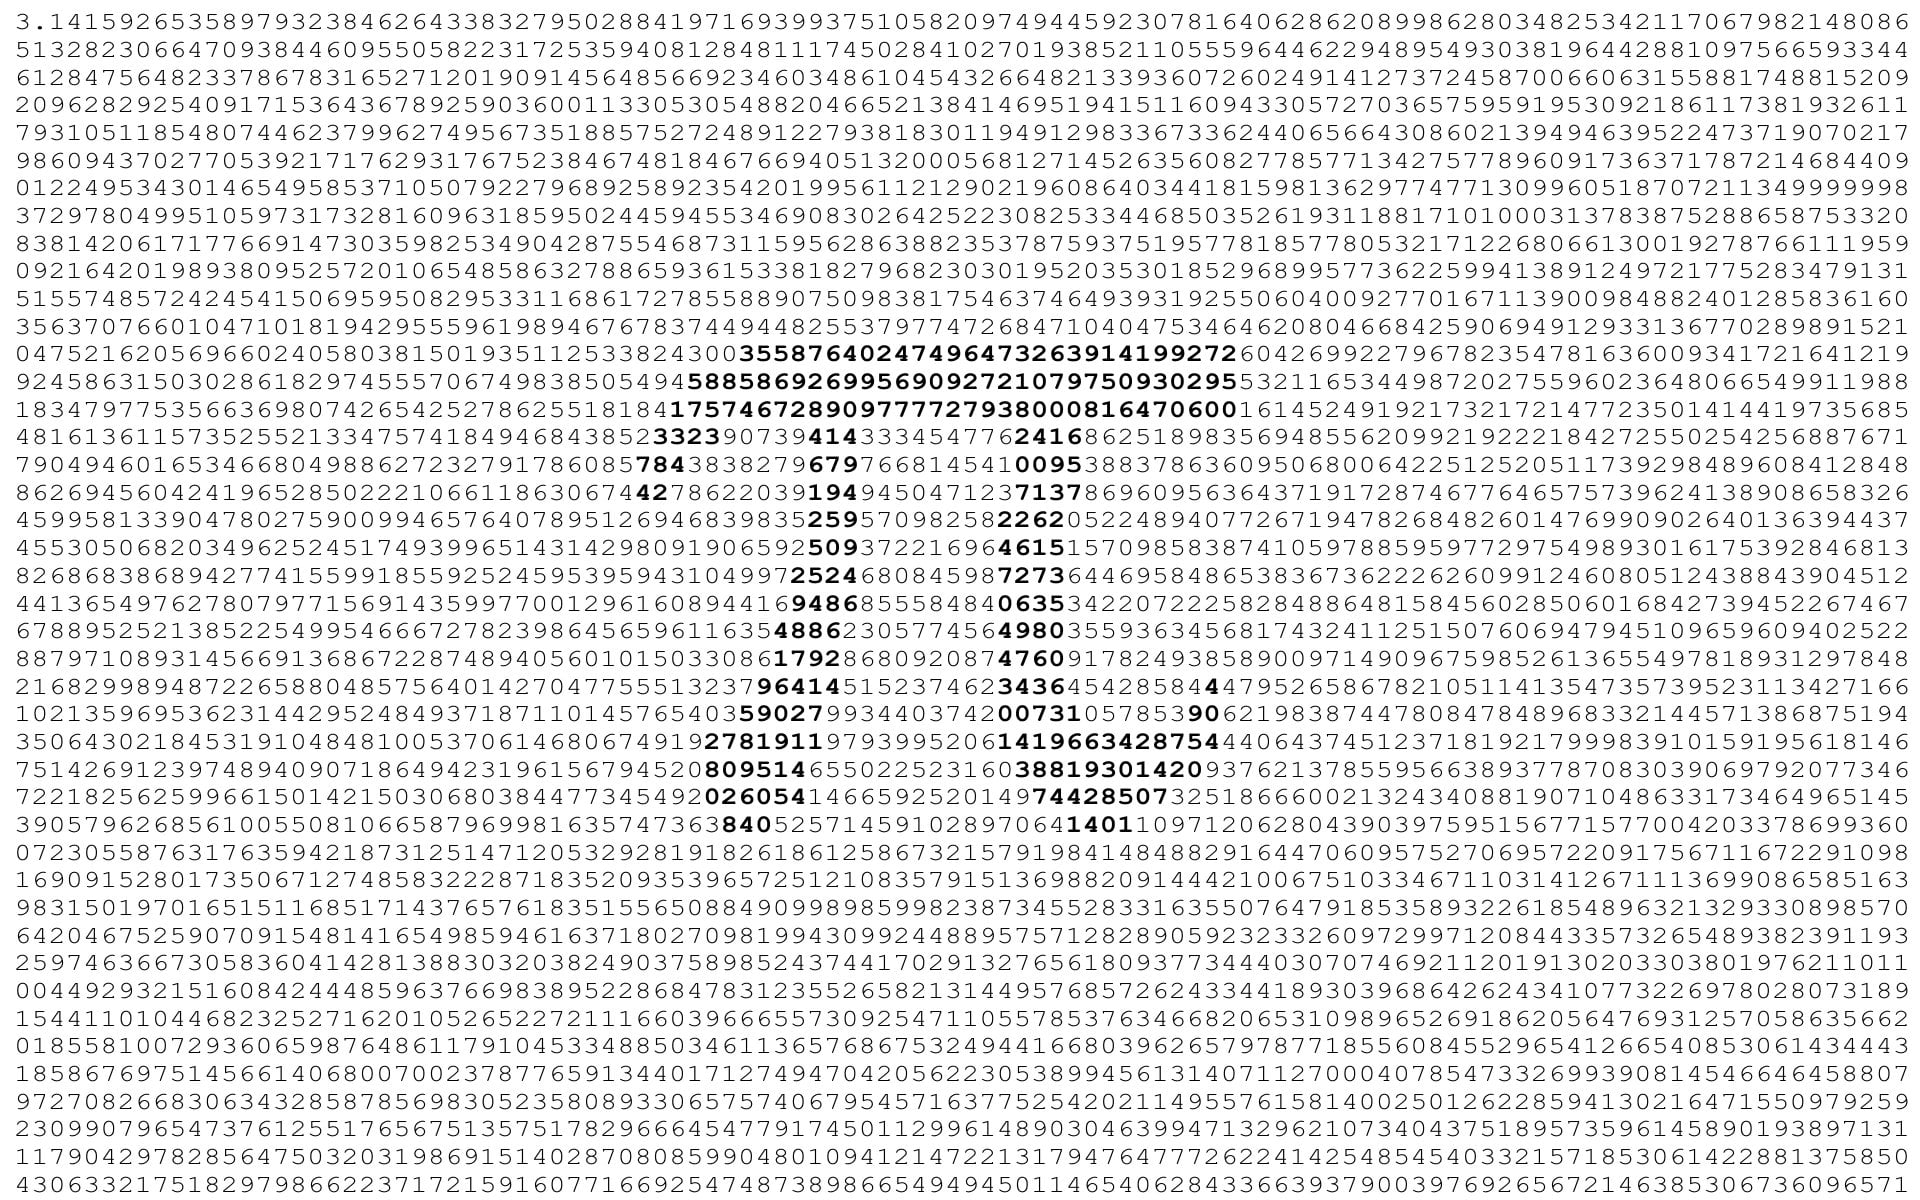 pi illustration, the number, 3.14, the number PI, backgrounds